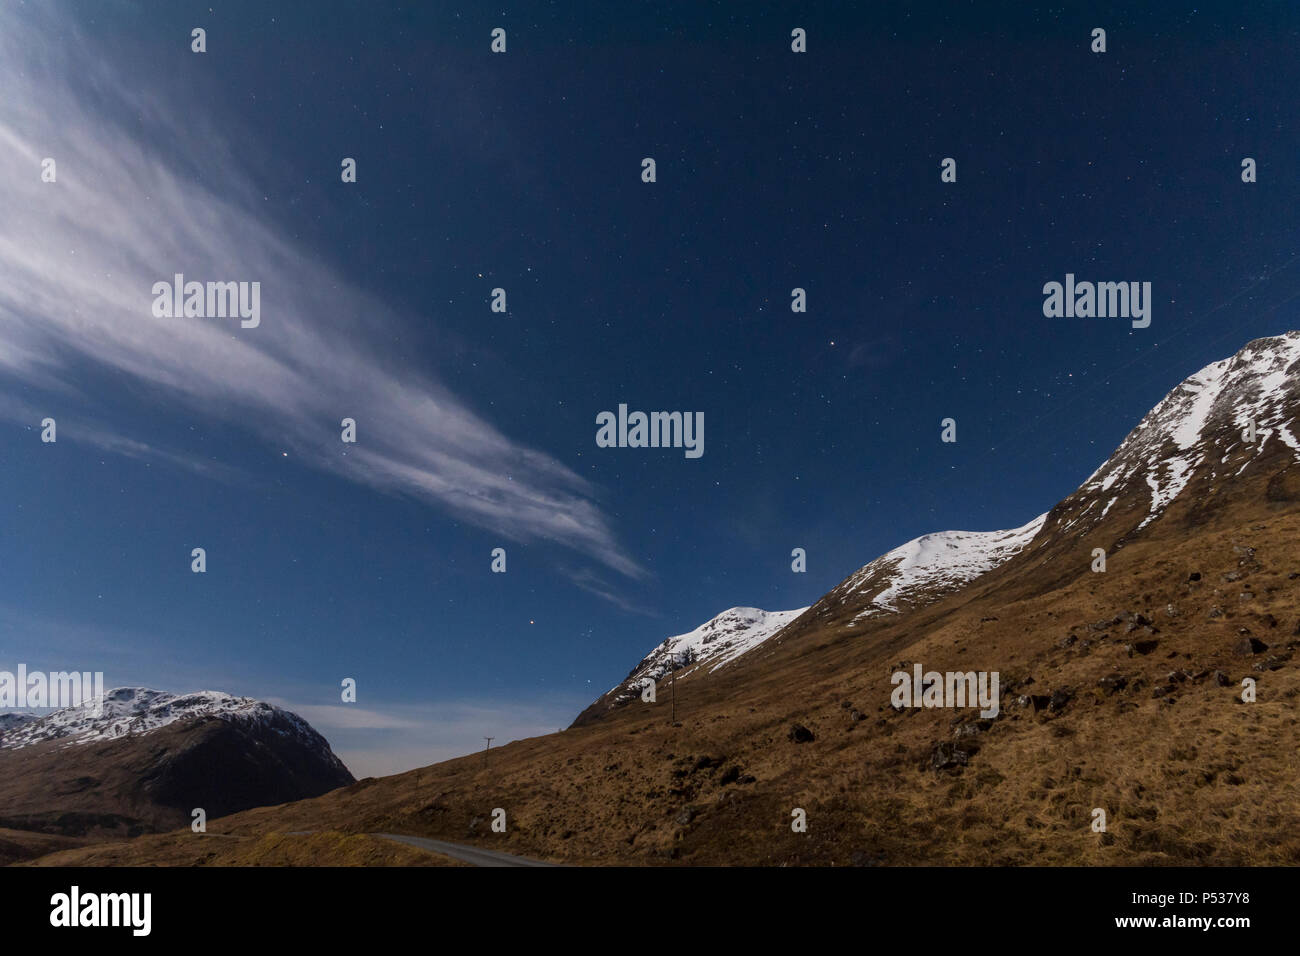 Glen Etive al chiaro di luna. 30 seconda esposizione vicino a mezzanotte. Regione delle Highlands, Scotland, Regno Unito Foto Stock